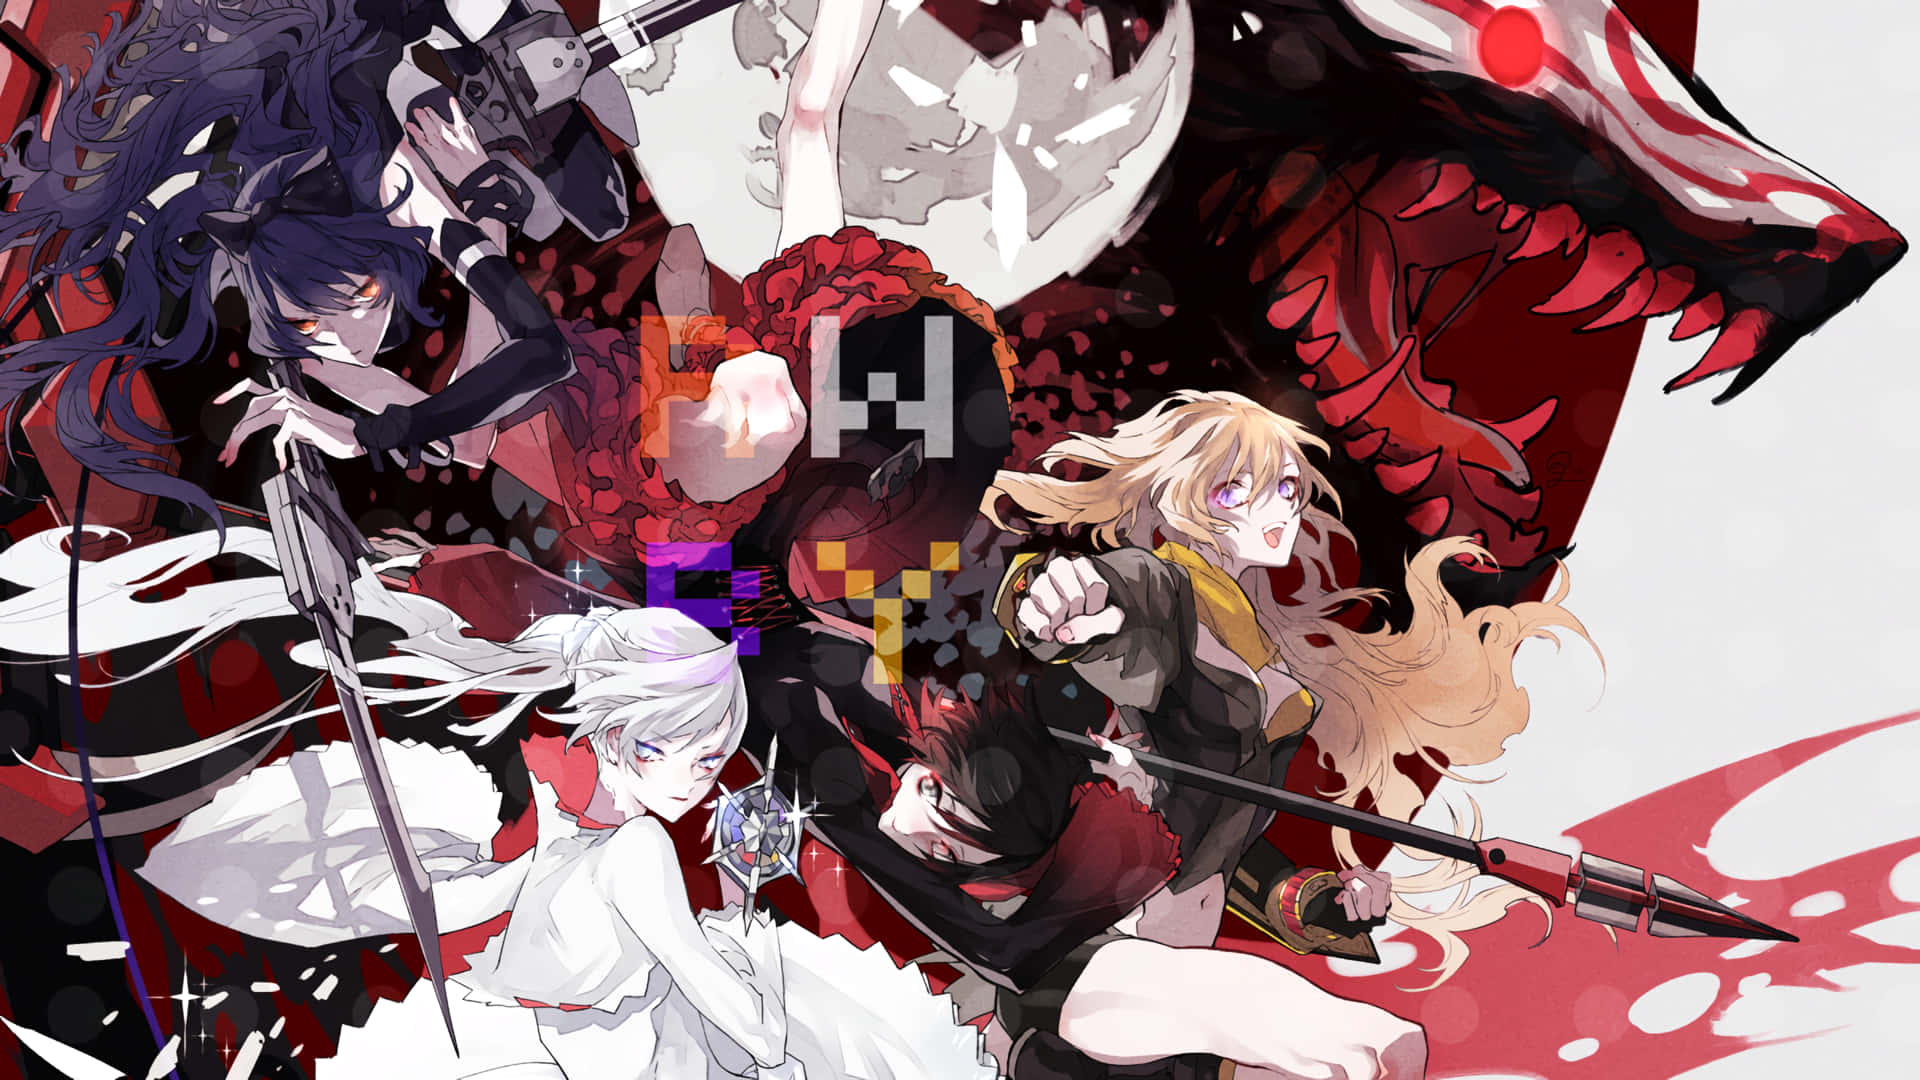 En gruppe af anime figurer med sværd og djævelens øjne